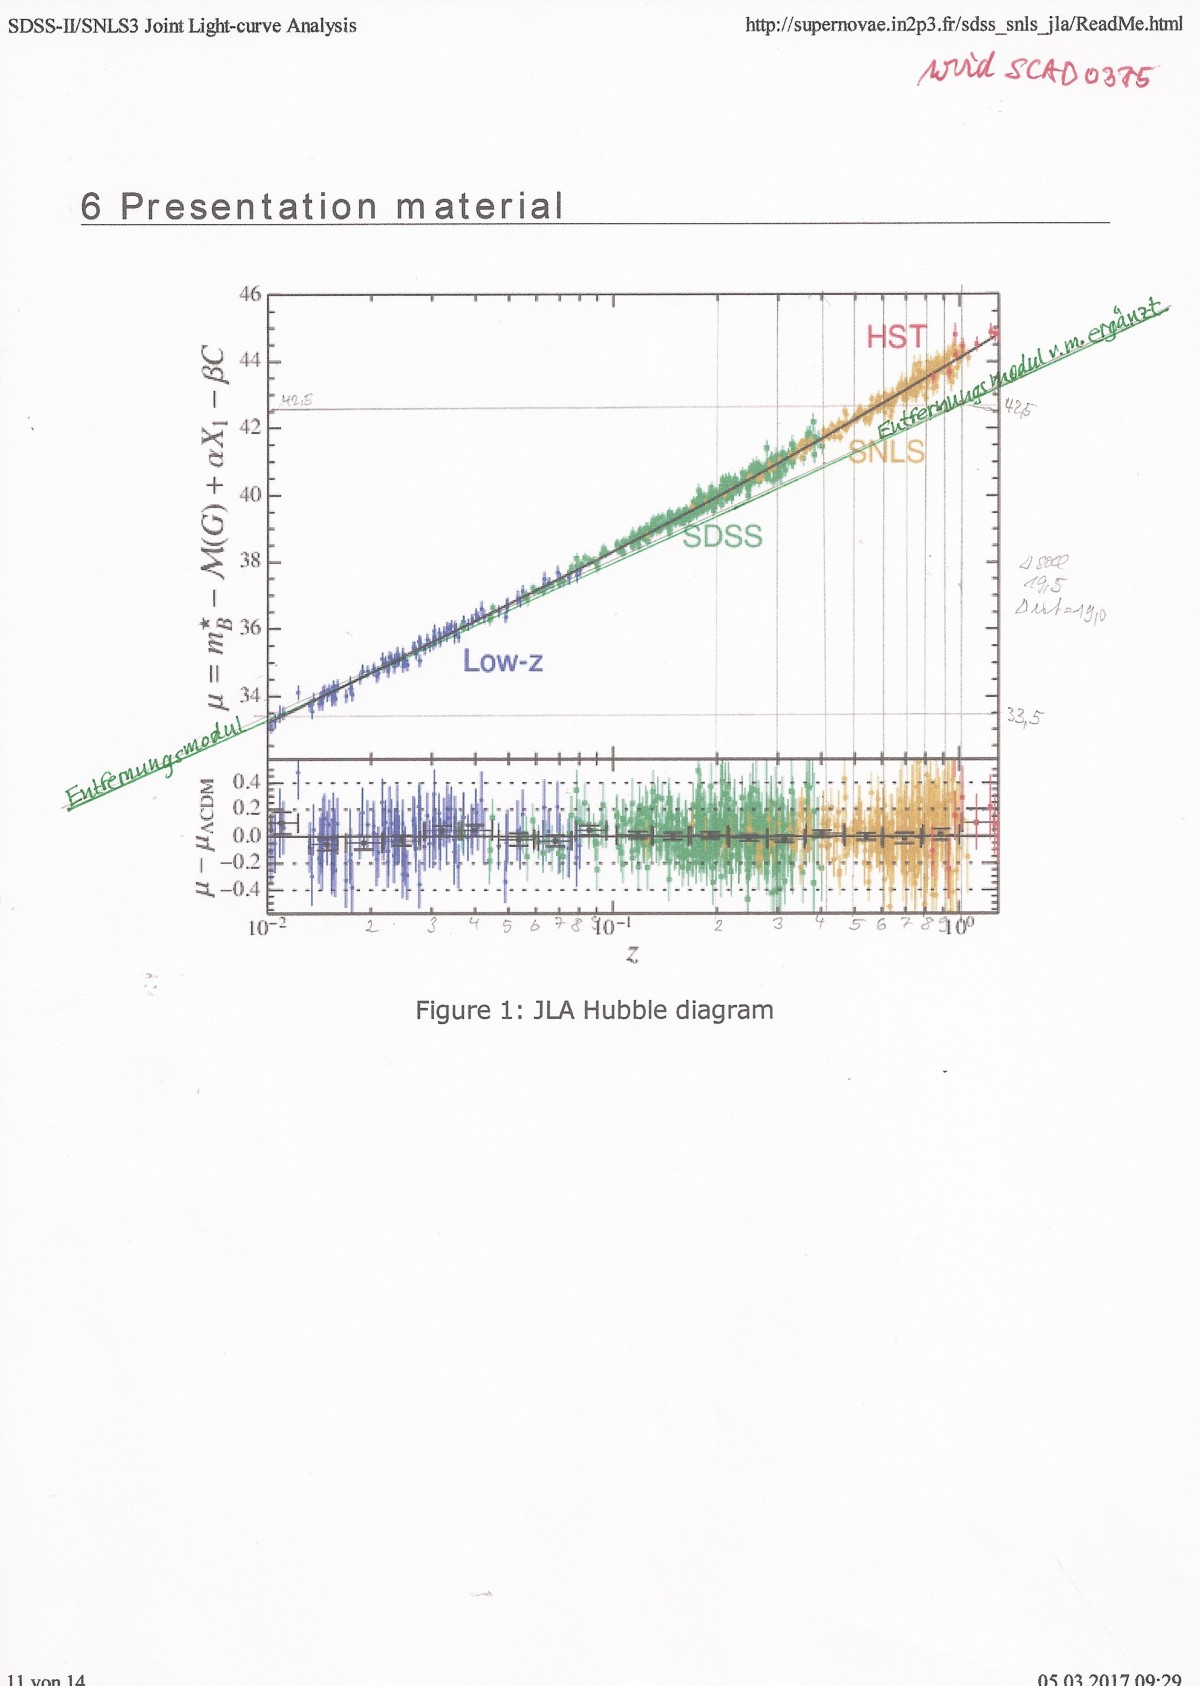 Figure 1: JLA Hubble diagram = "Hubble_plot"